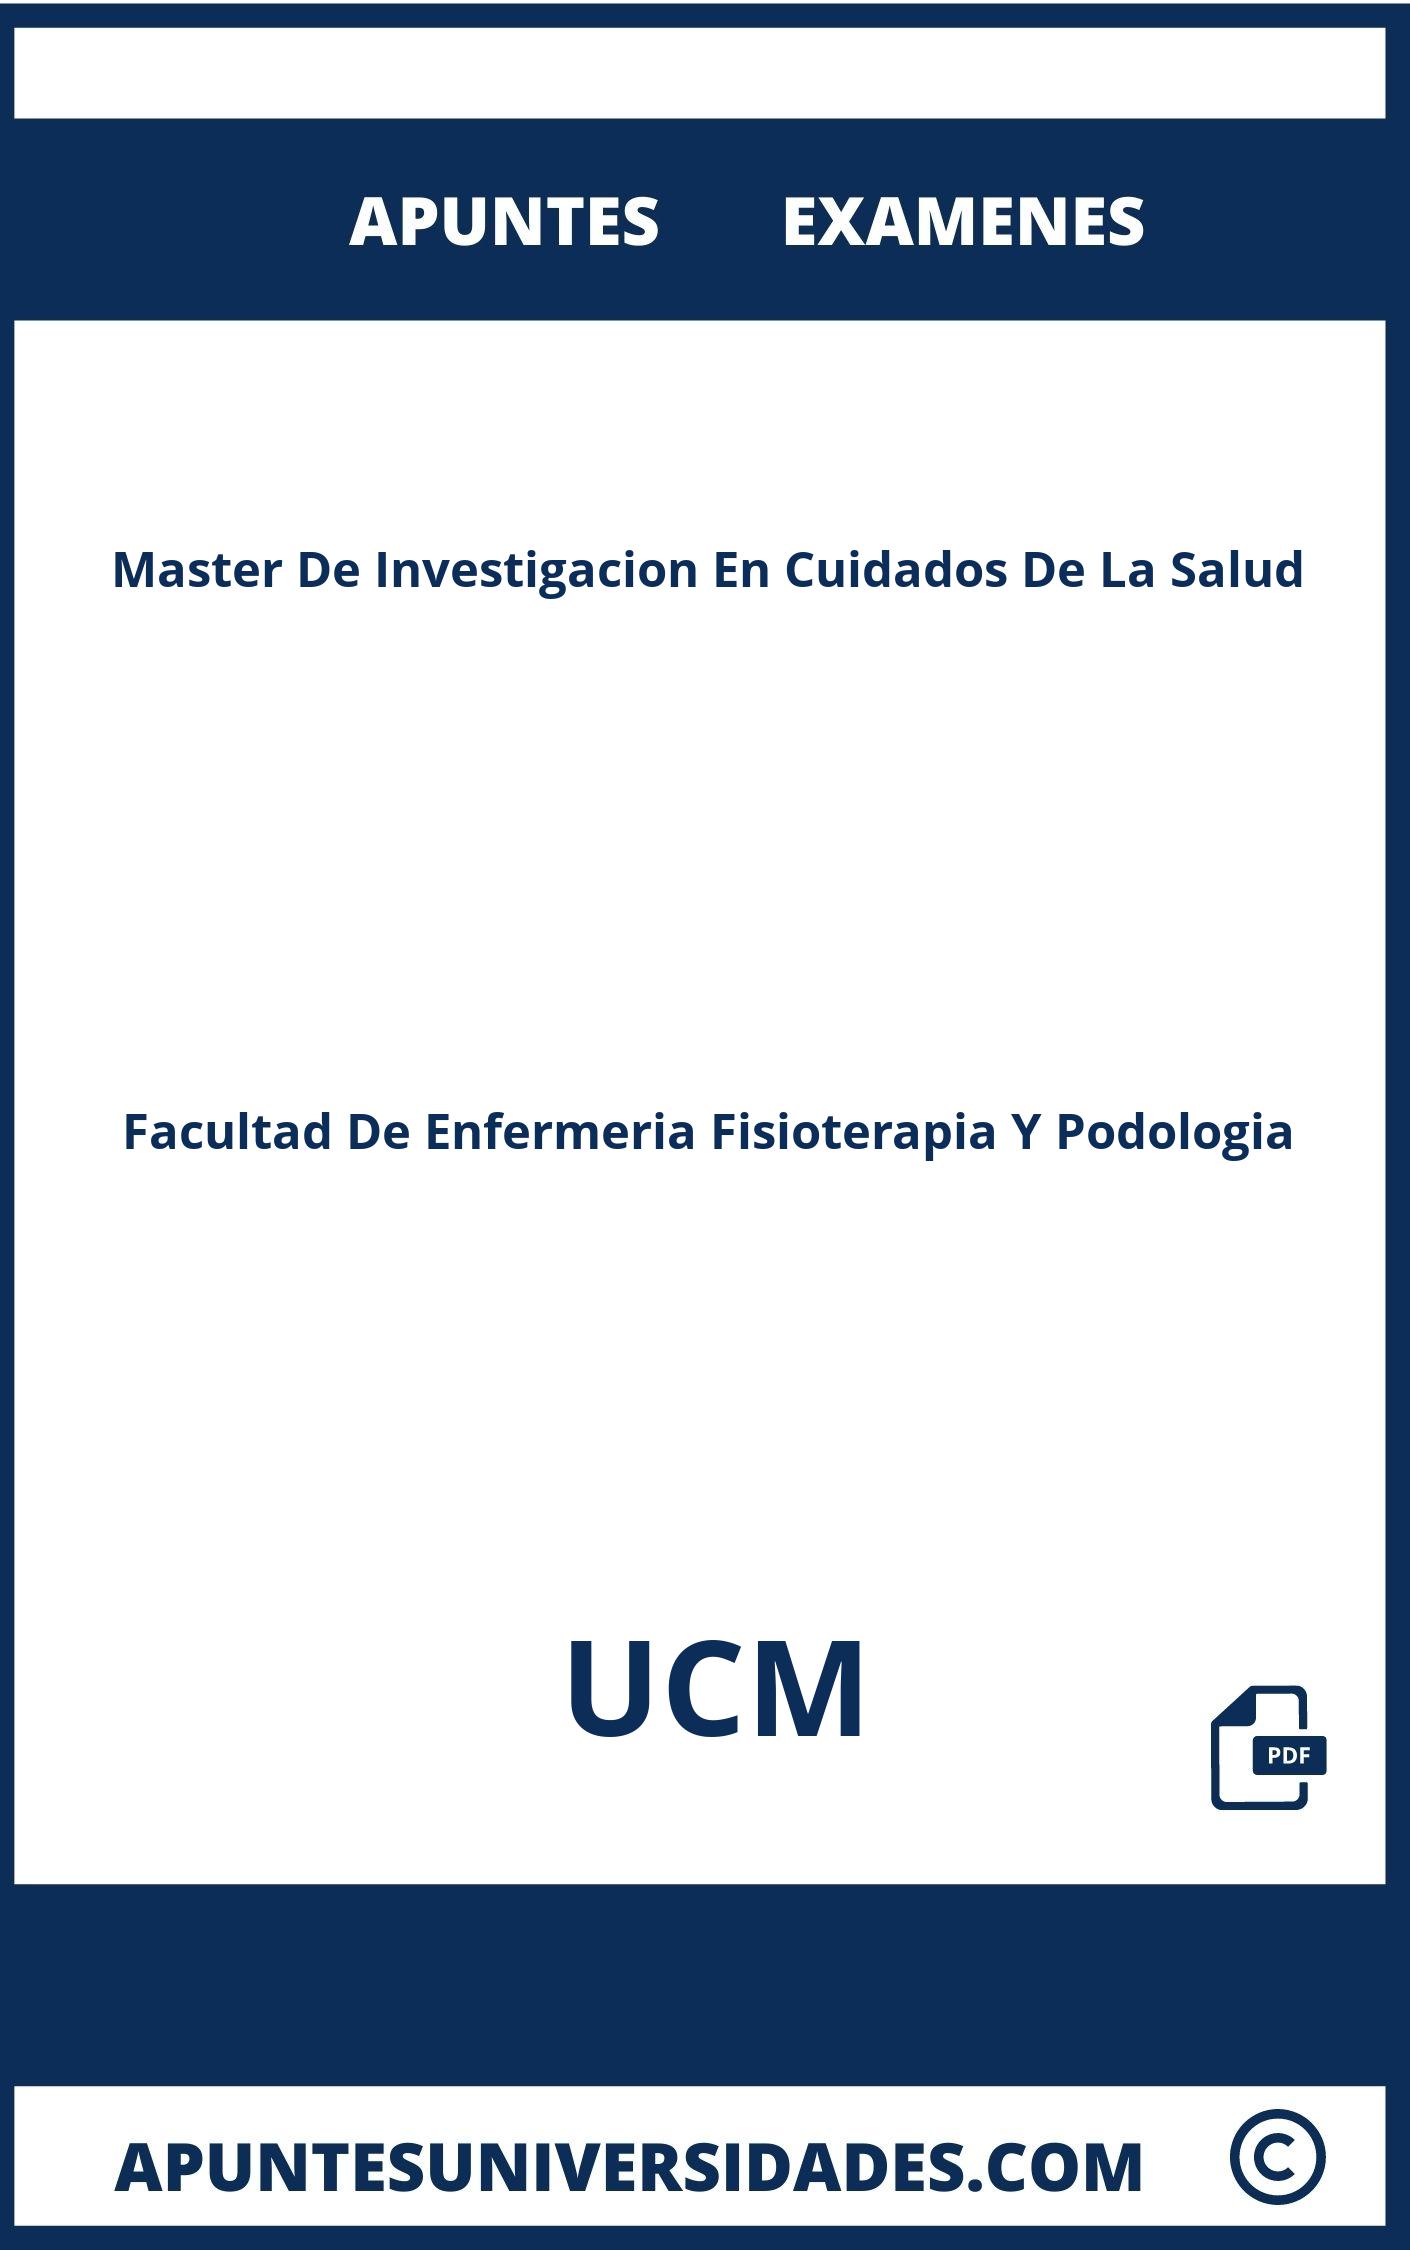 Examenes y Apuntes Master De Investigacion En Cuidados De La Salud UCM